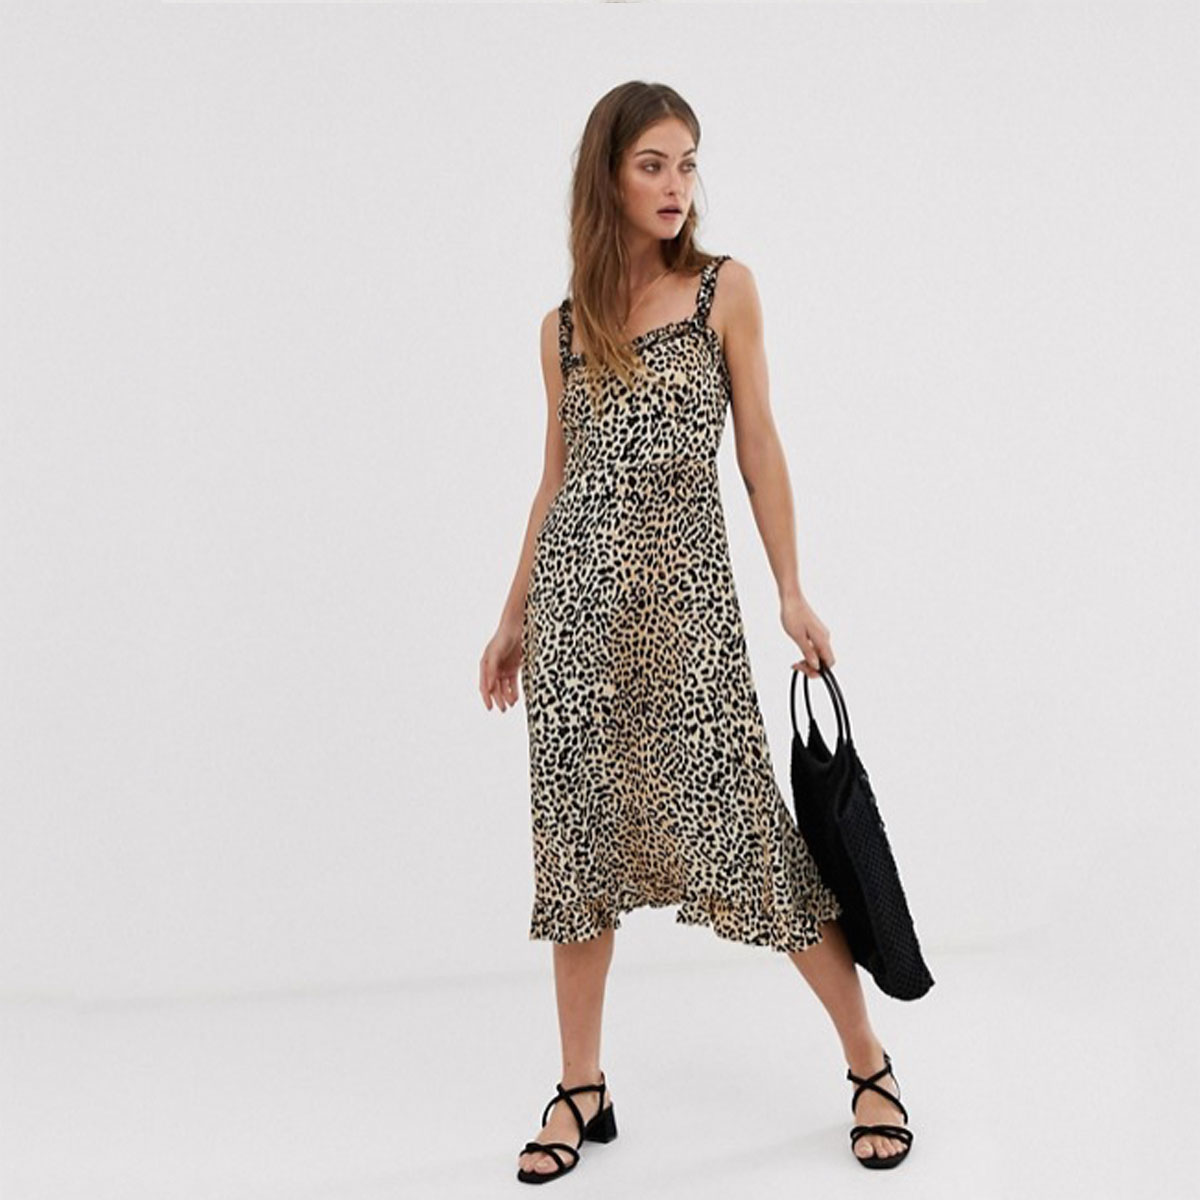 faithfull leopard wrap dress